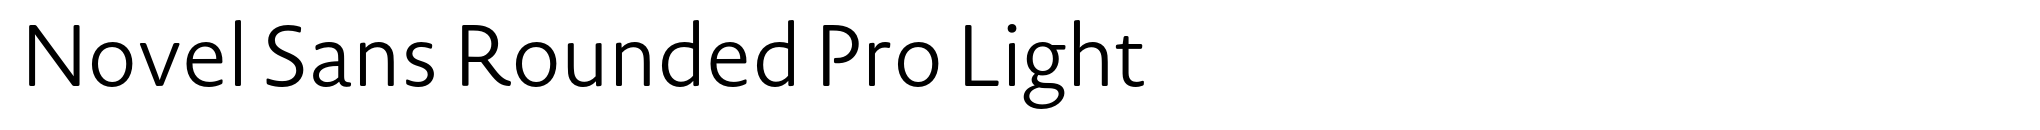 Novel Sans Rounded Pro Light image